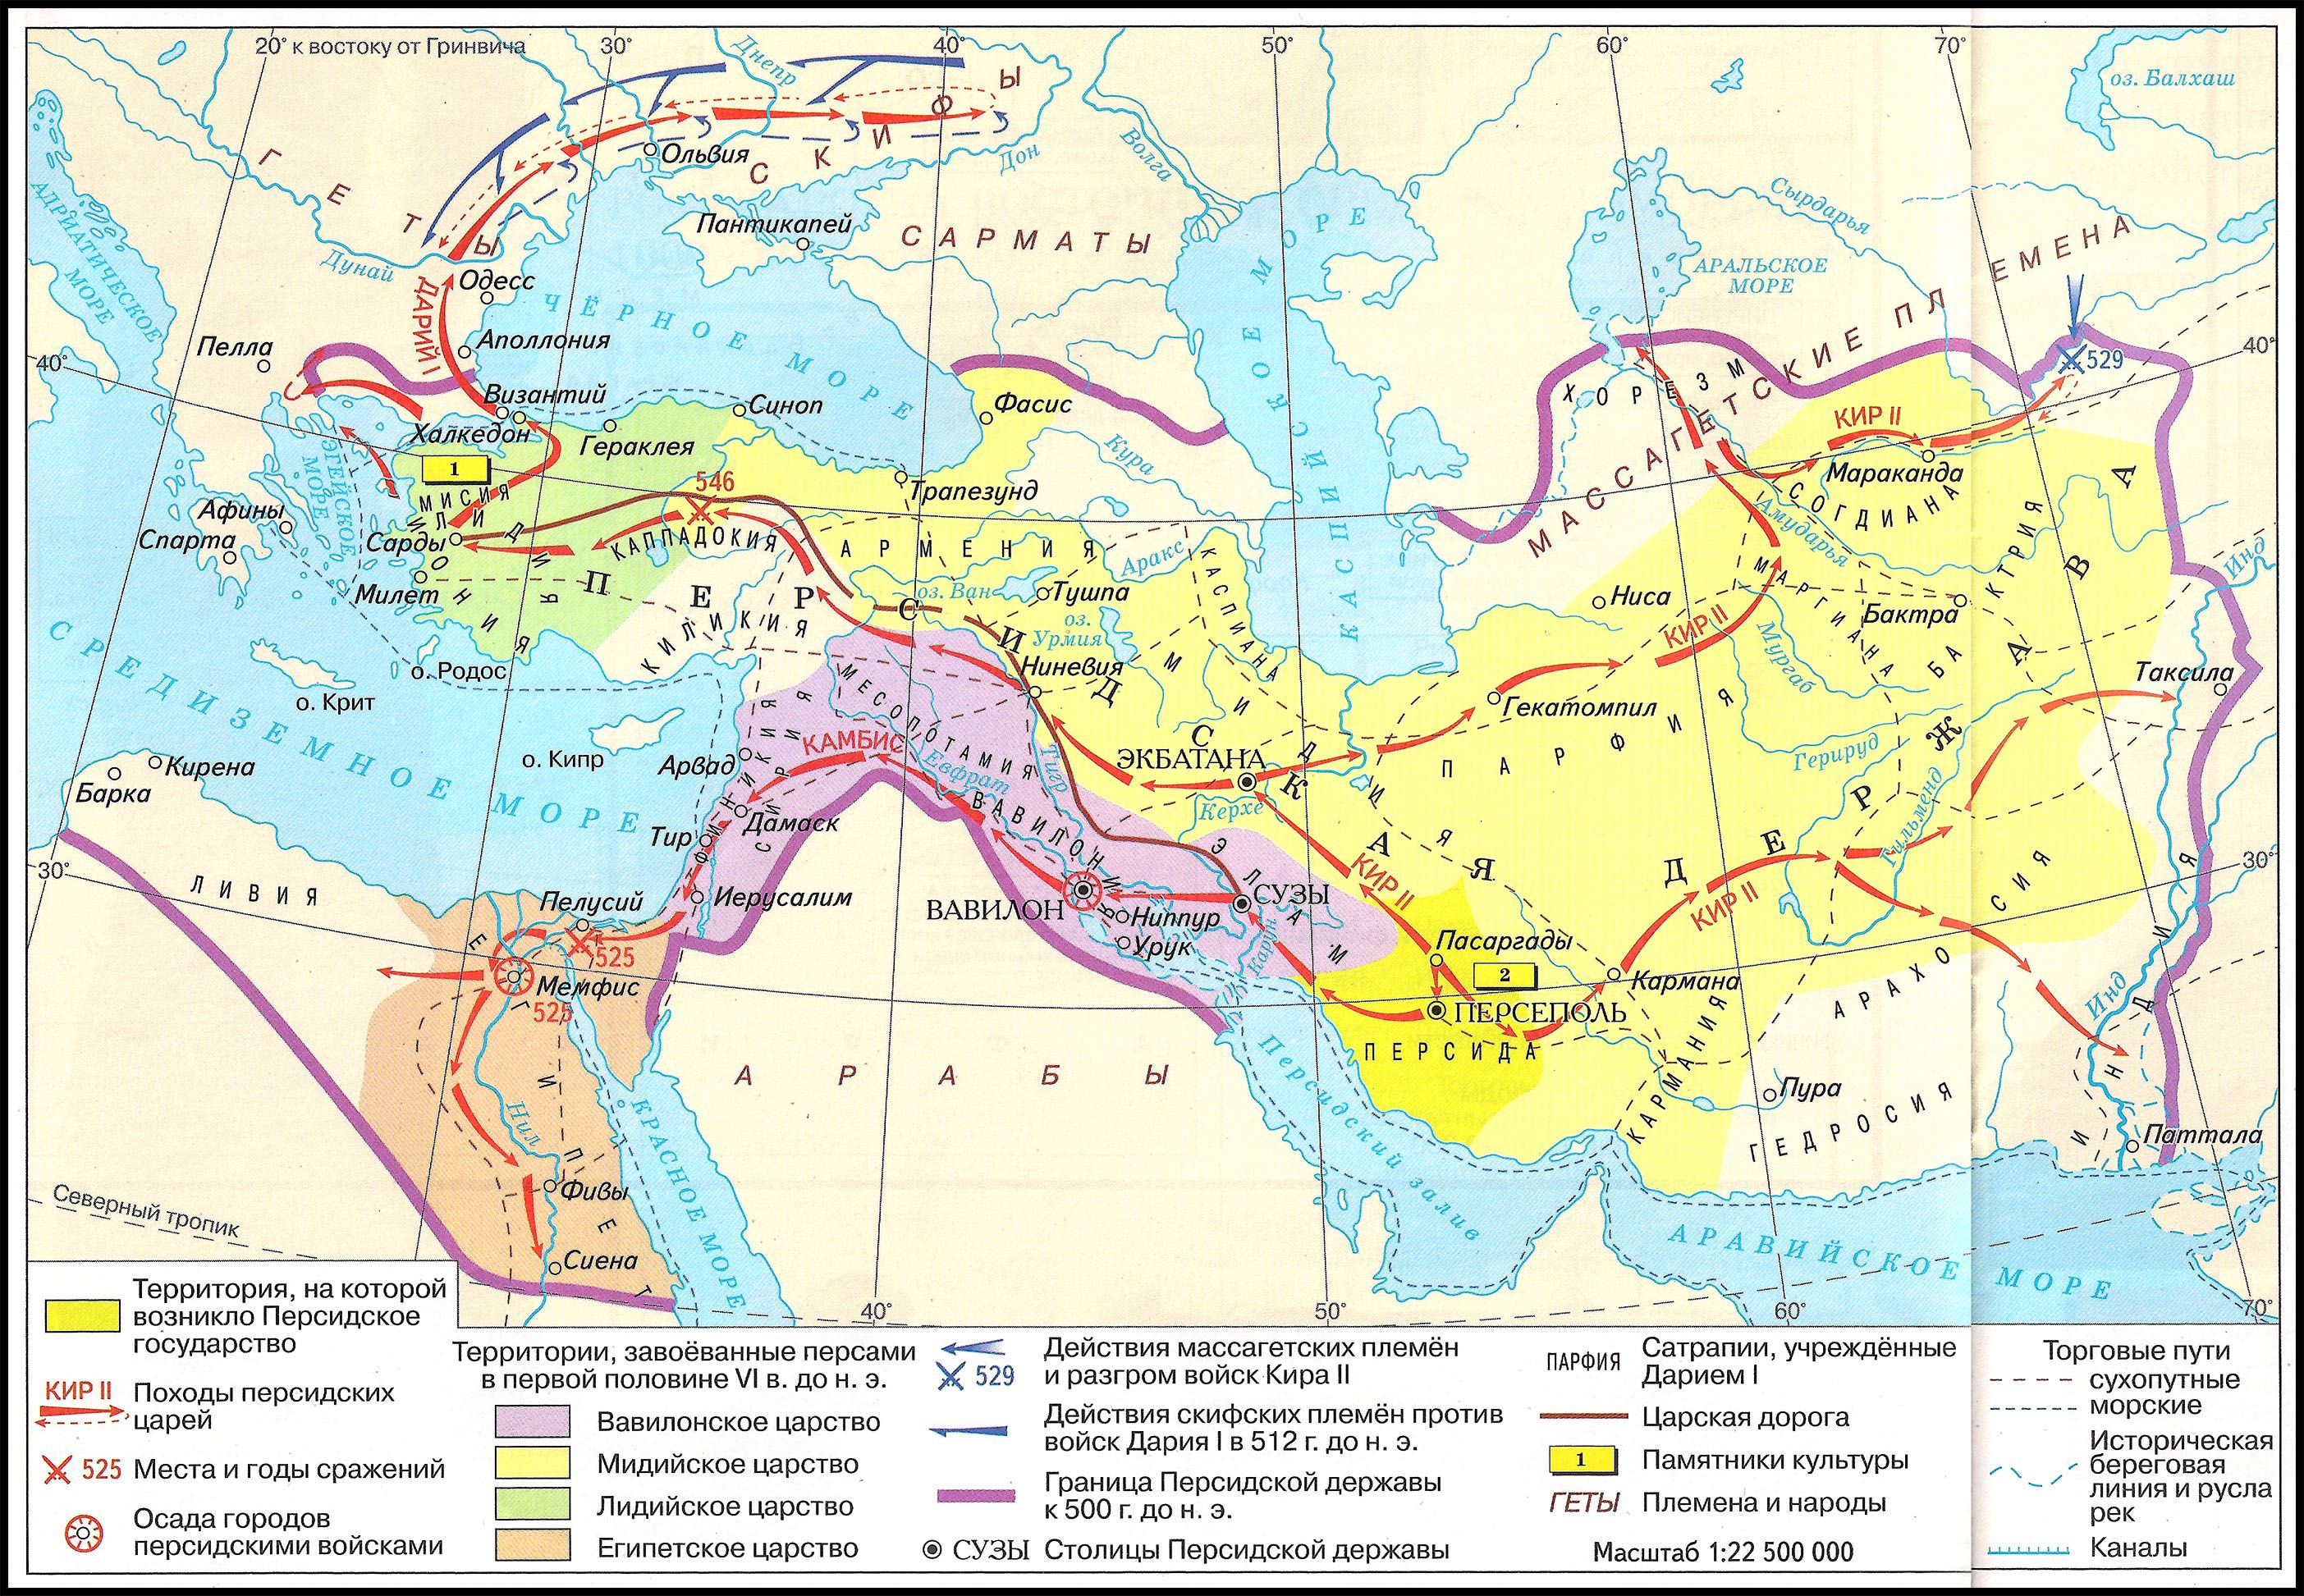 Царский путь в культуре. Персидская держава 550-330 гг до н э.